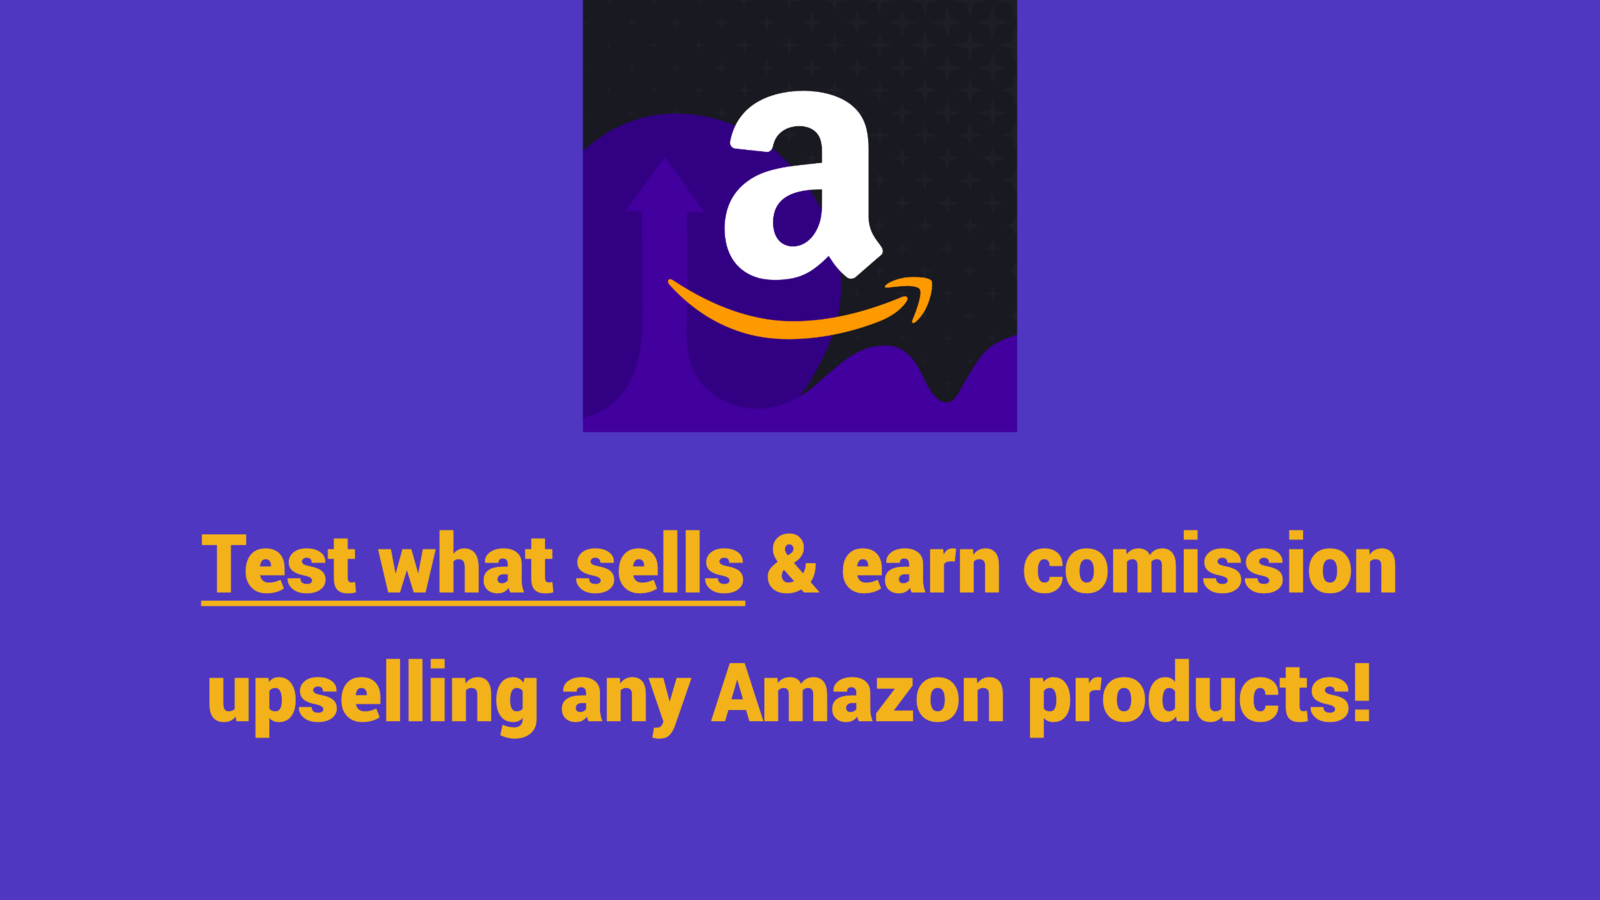 Test wat verkoopt en verdien commissie door Amazon-producten te upsellen